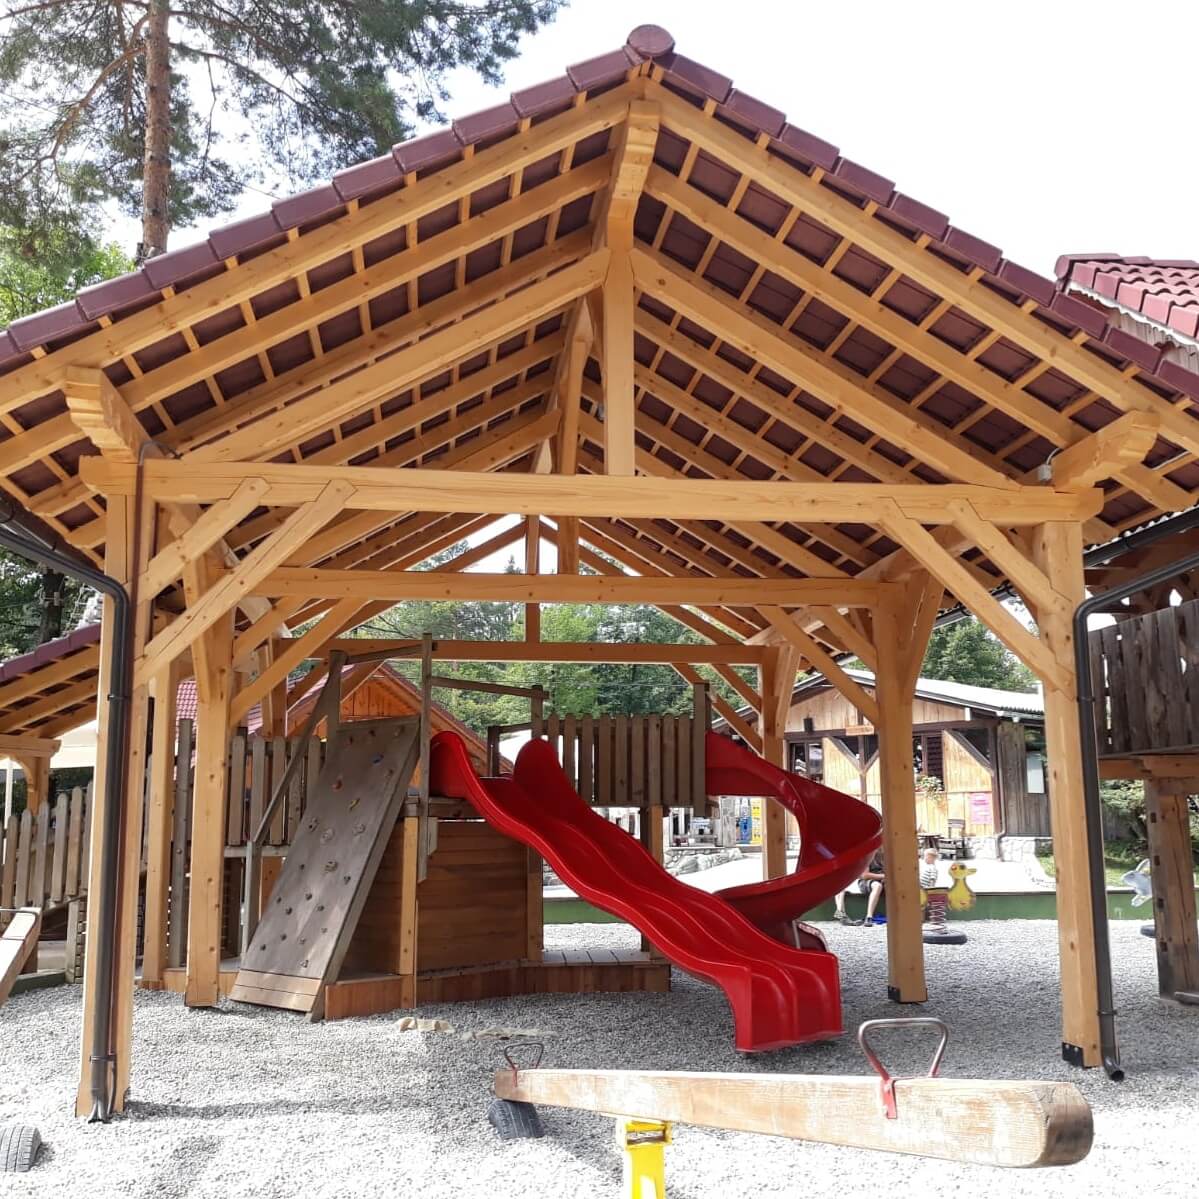 Vakantie in Slovenië met kids, Outdoor Paradijs! Camping Kamp Menina speeltuin